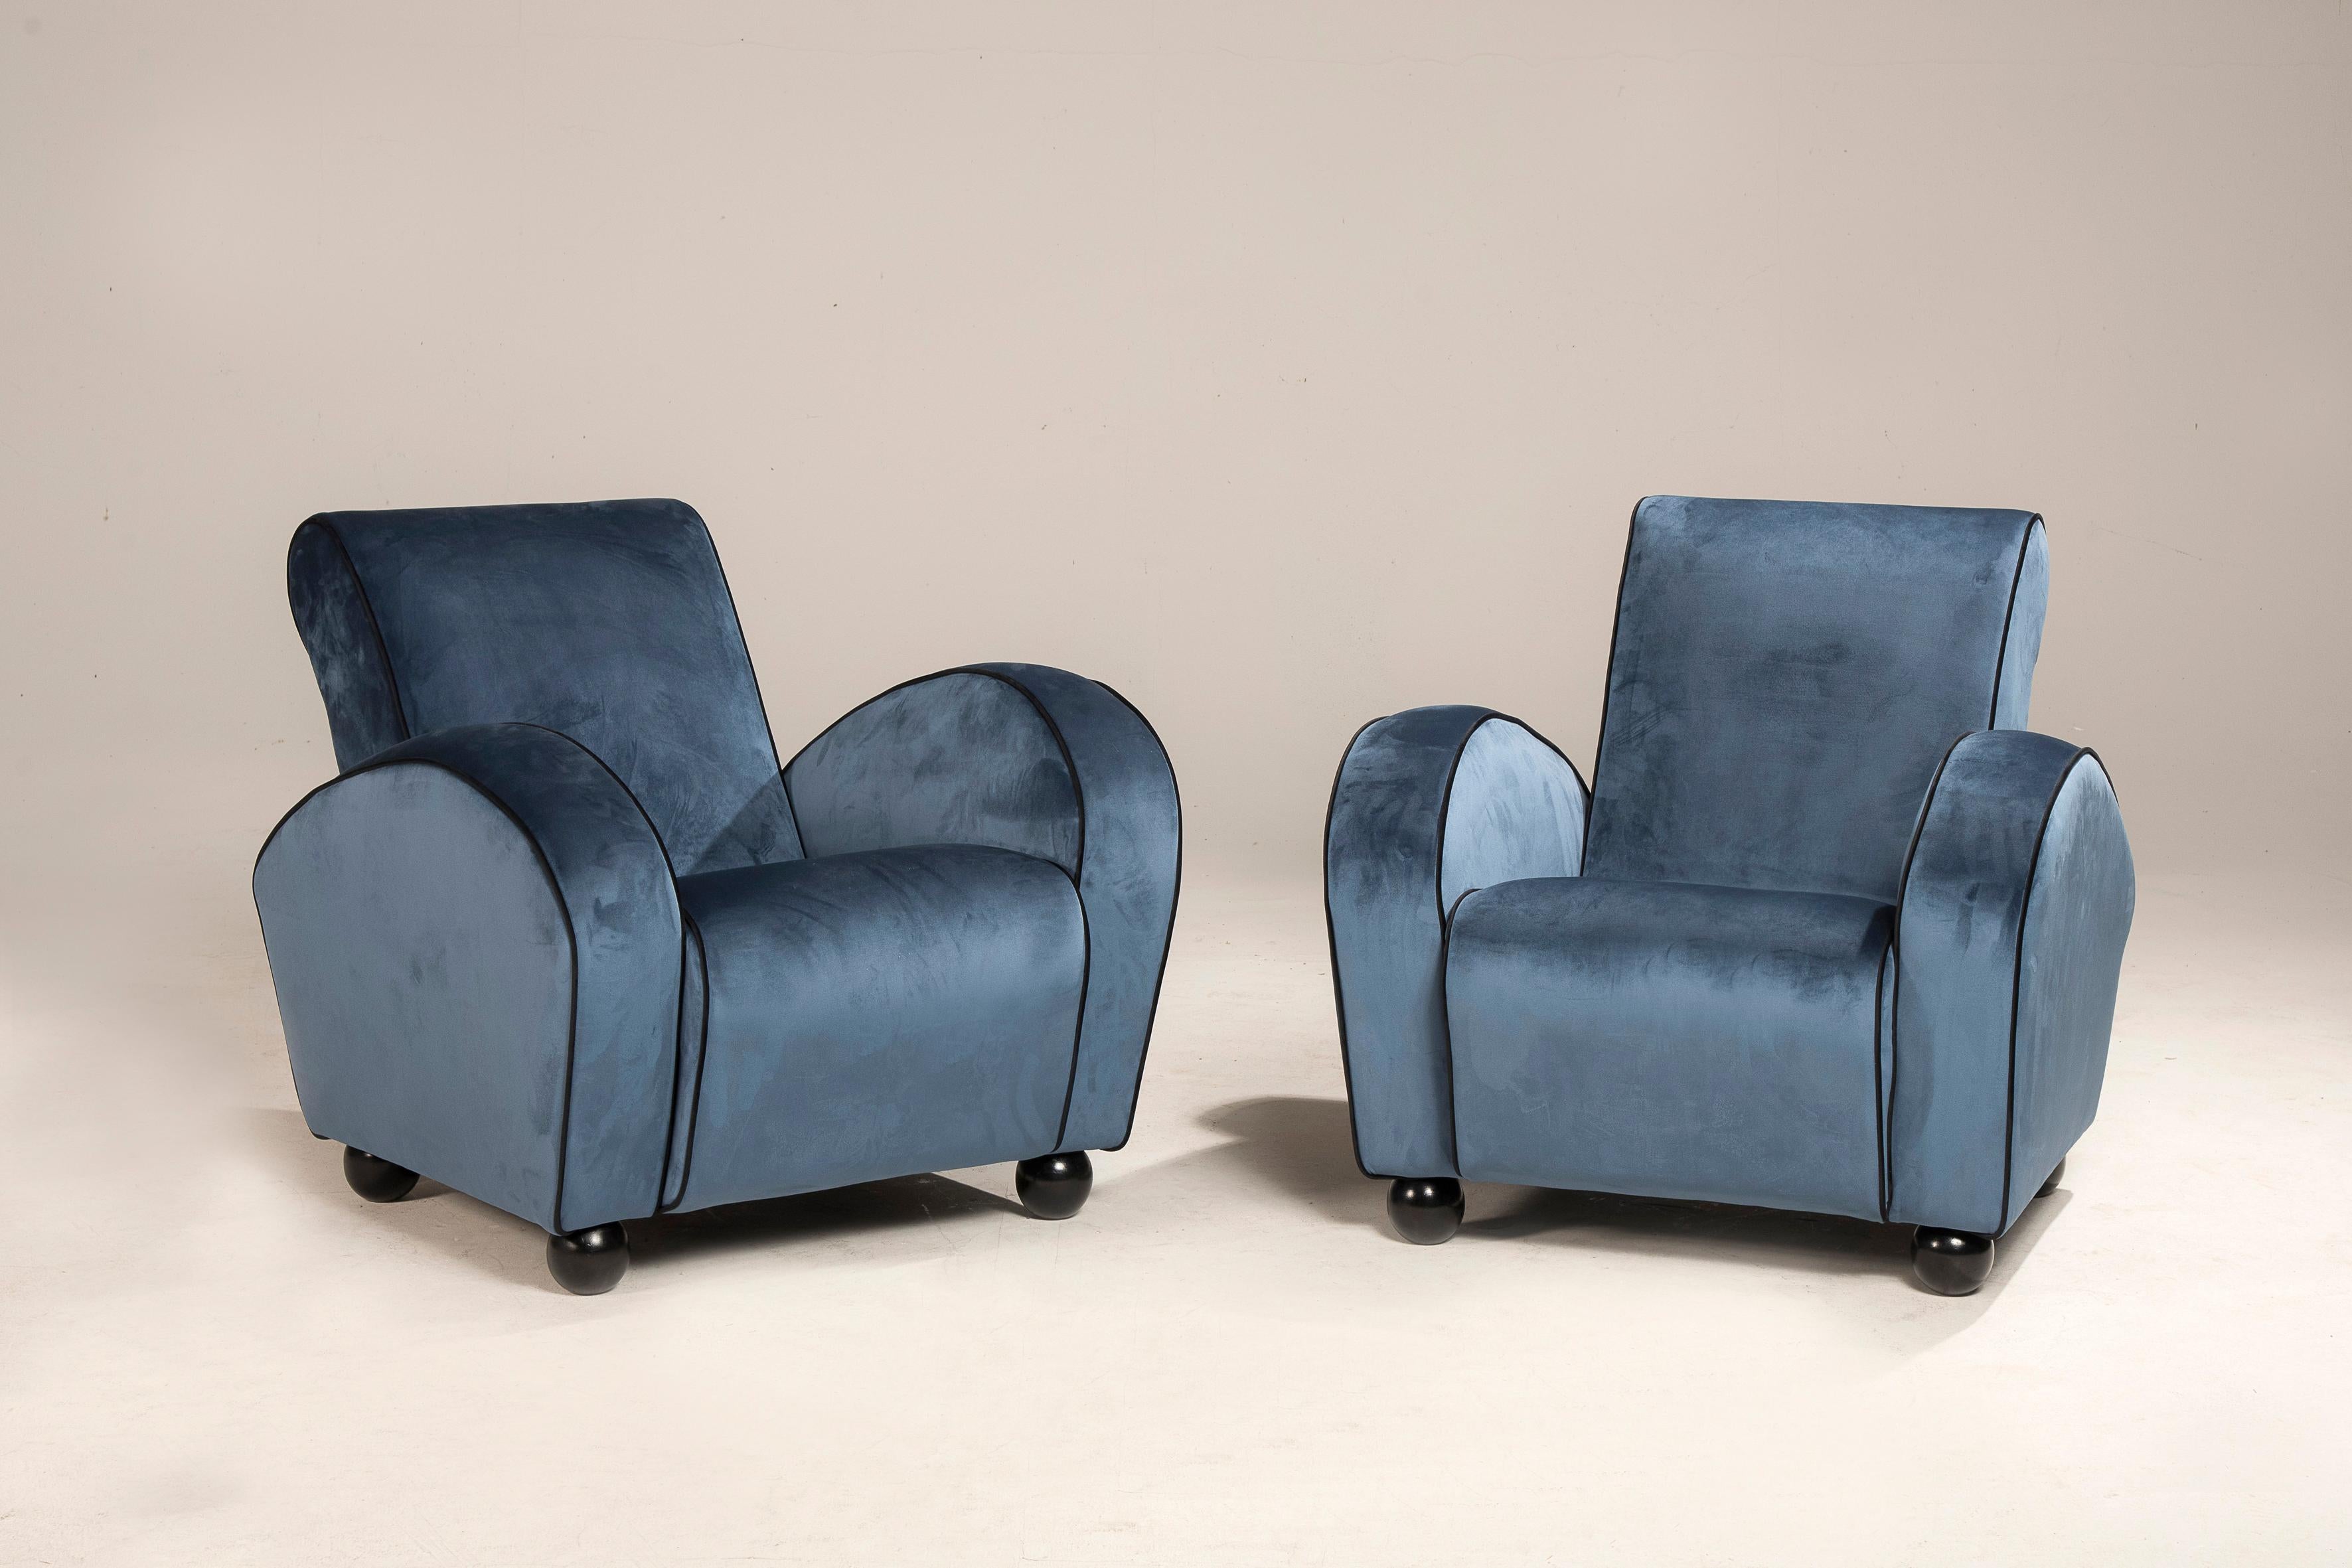 Paar Art-Déco-Sessel aus blauem Samt mit schwarzen Bordüren.
Die Sessel wurden neu gepolstert und mit handgefertigten Oberflächen versehen.

Abmessungen: L. CM 80 x T. CM 80 x H. CM 83 - Sitzhöhe 42 cm

Der Preis bezieht sich auf das Paar.